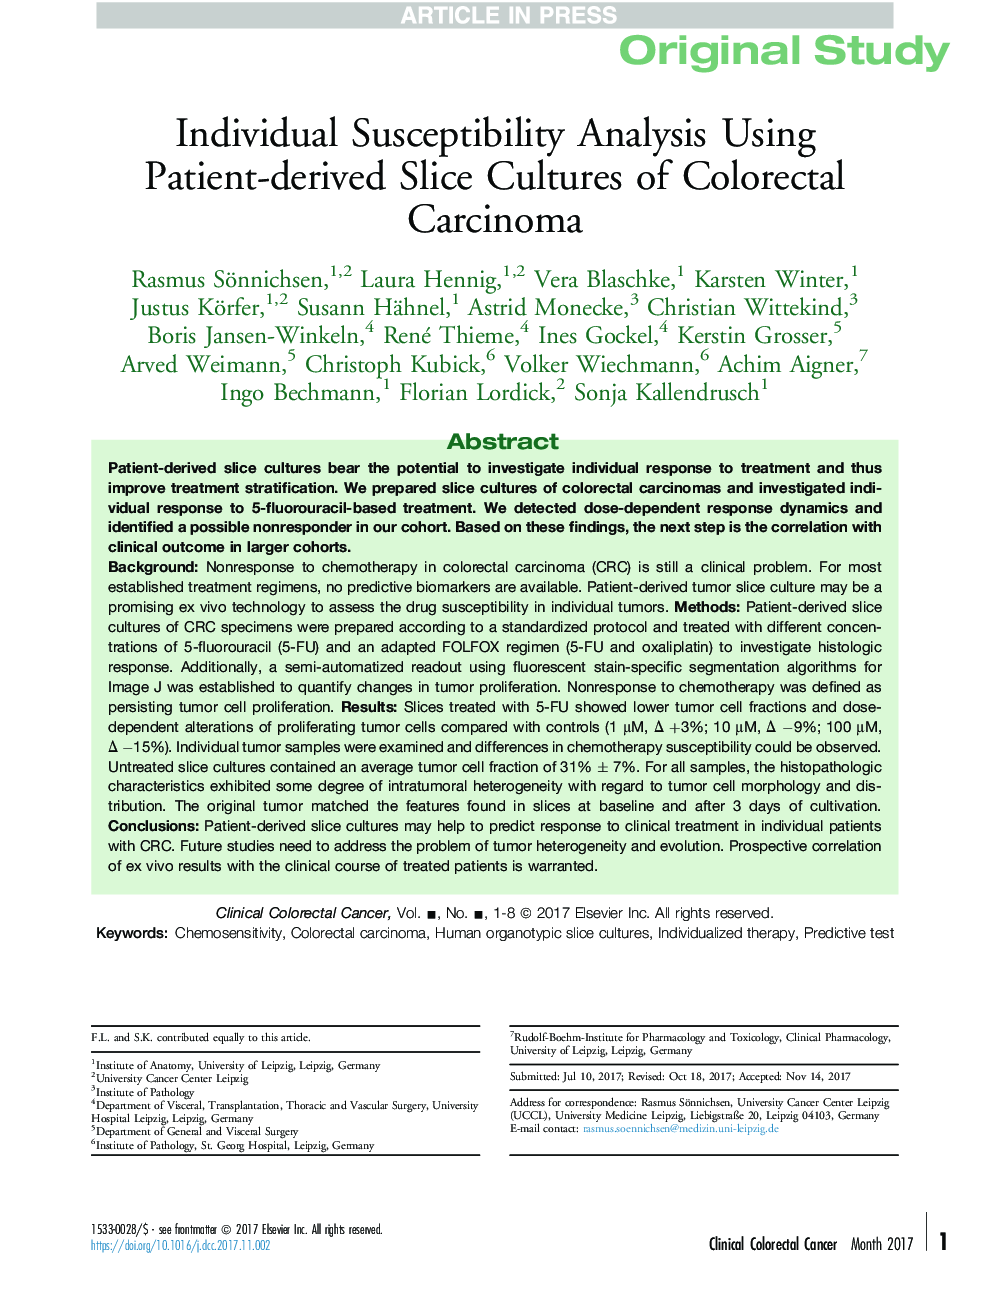 تجزیه و تحلیل حساسیت فردی با استفاده از کشت شکسته بیمار از کارسینوم کولورکتال 